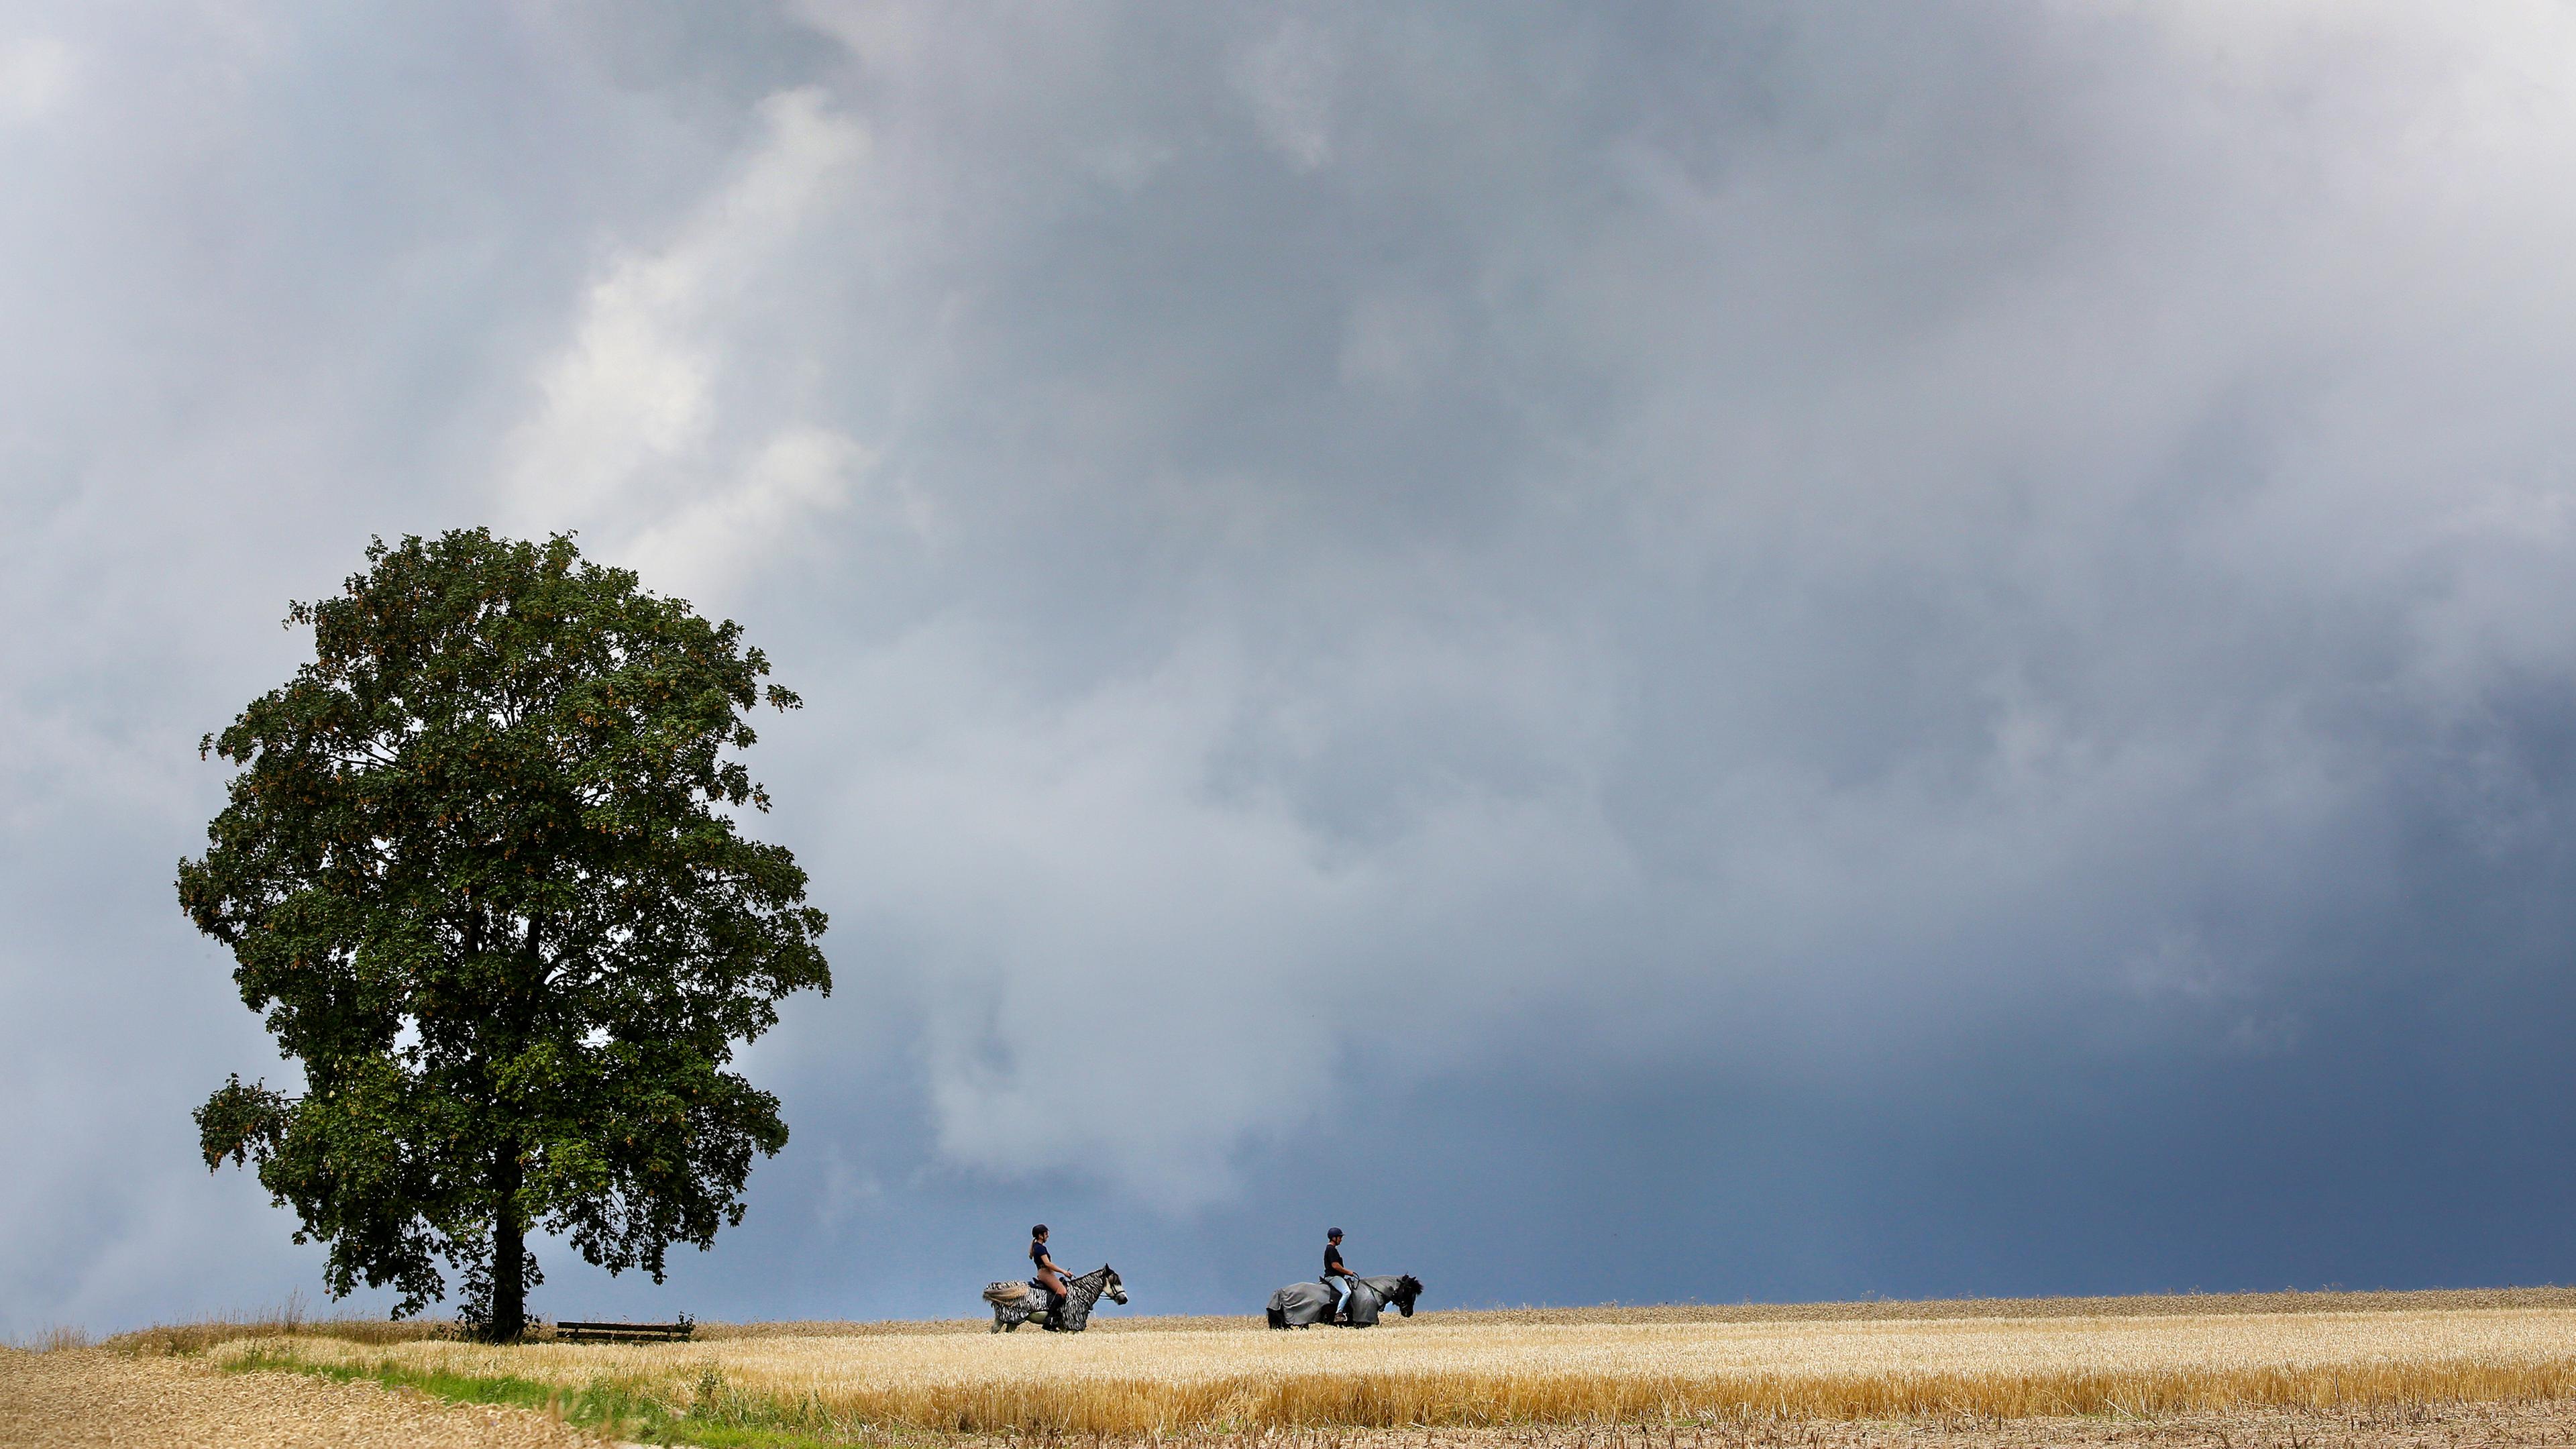 Baden-Württemberg, Riedlingen: Reiterinnen sind mit ihren Pferden zwischen Getreidefeldern unterwegs, während im Hintergrund ein Gewitter aufzieht.